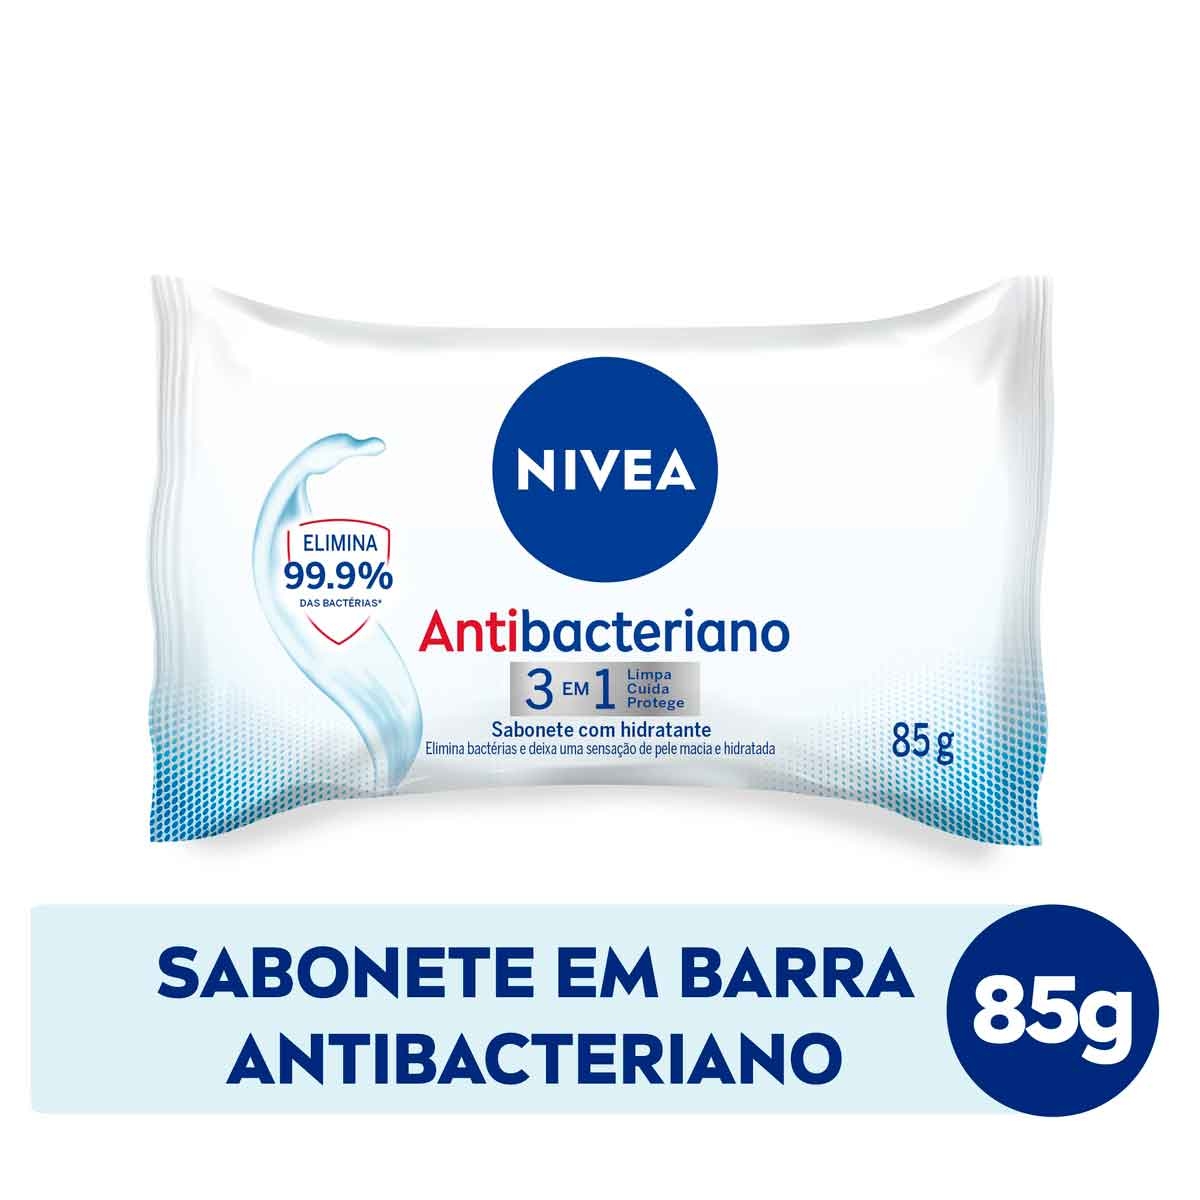 Sabonete em Barra Nivea Antibacteriano 3 em 1 85g 85g